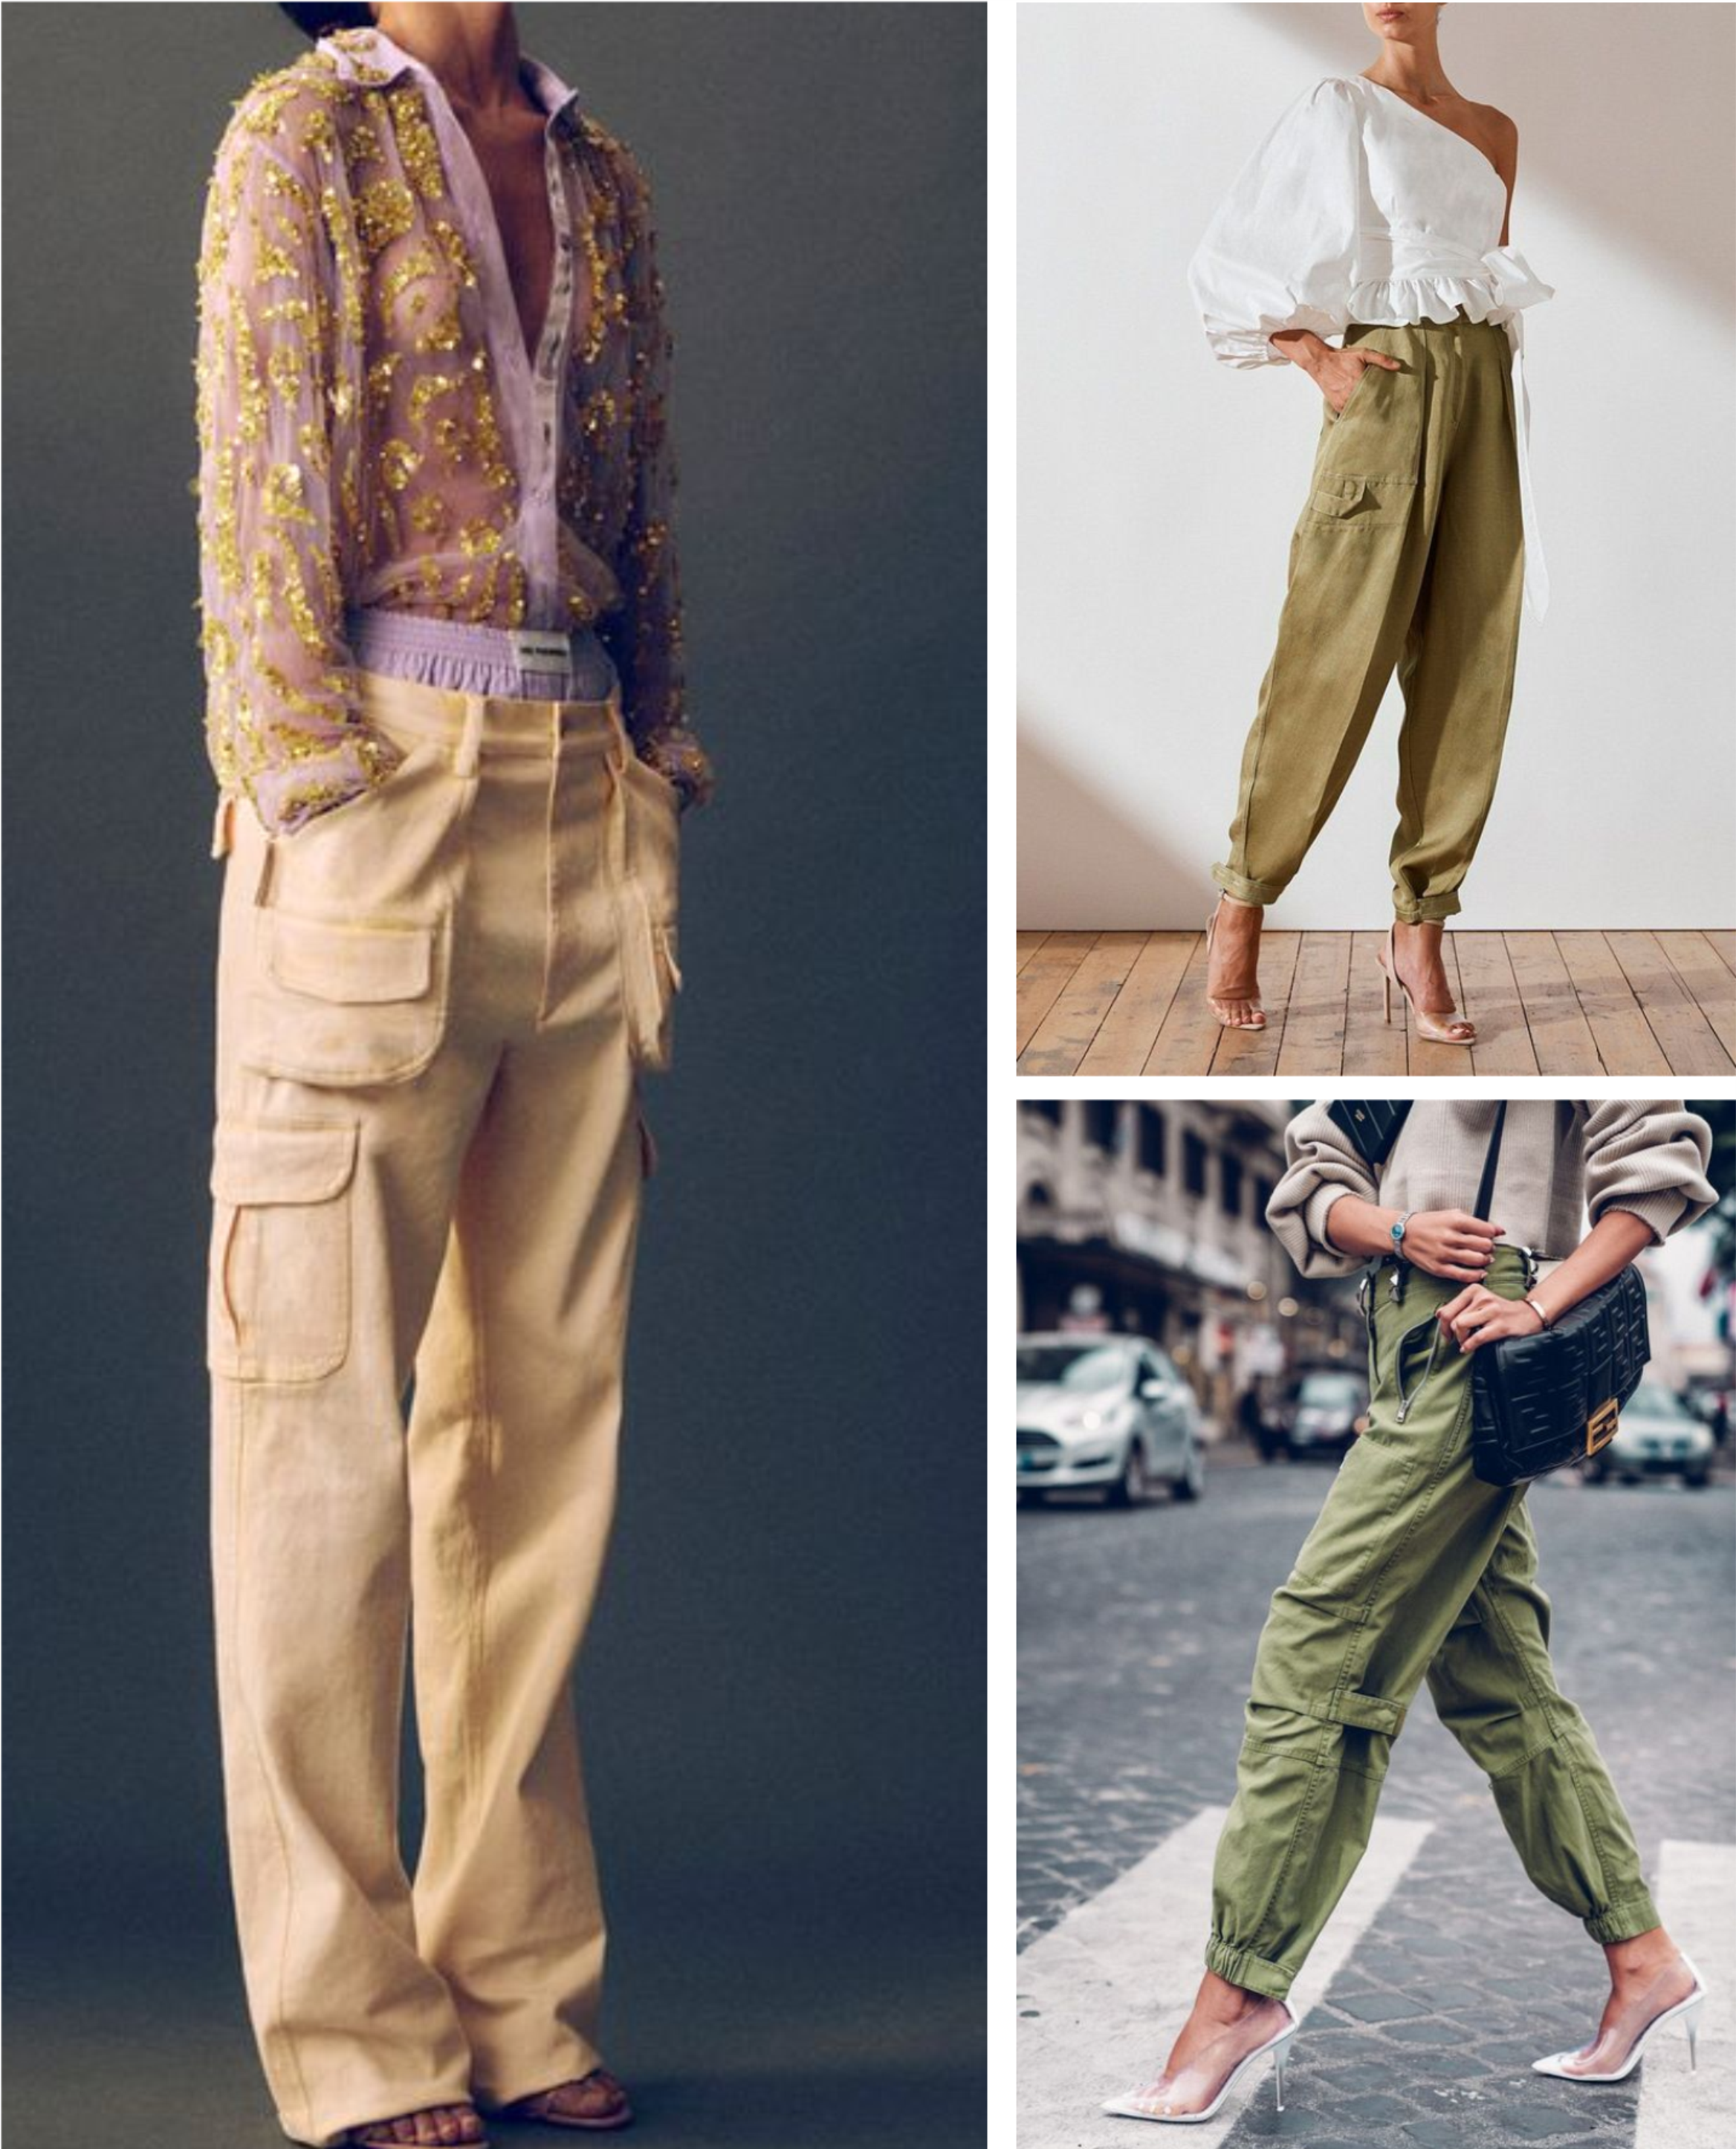 MODA: Di sí a la tendencia de los pantalones cargo que más